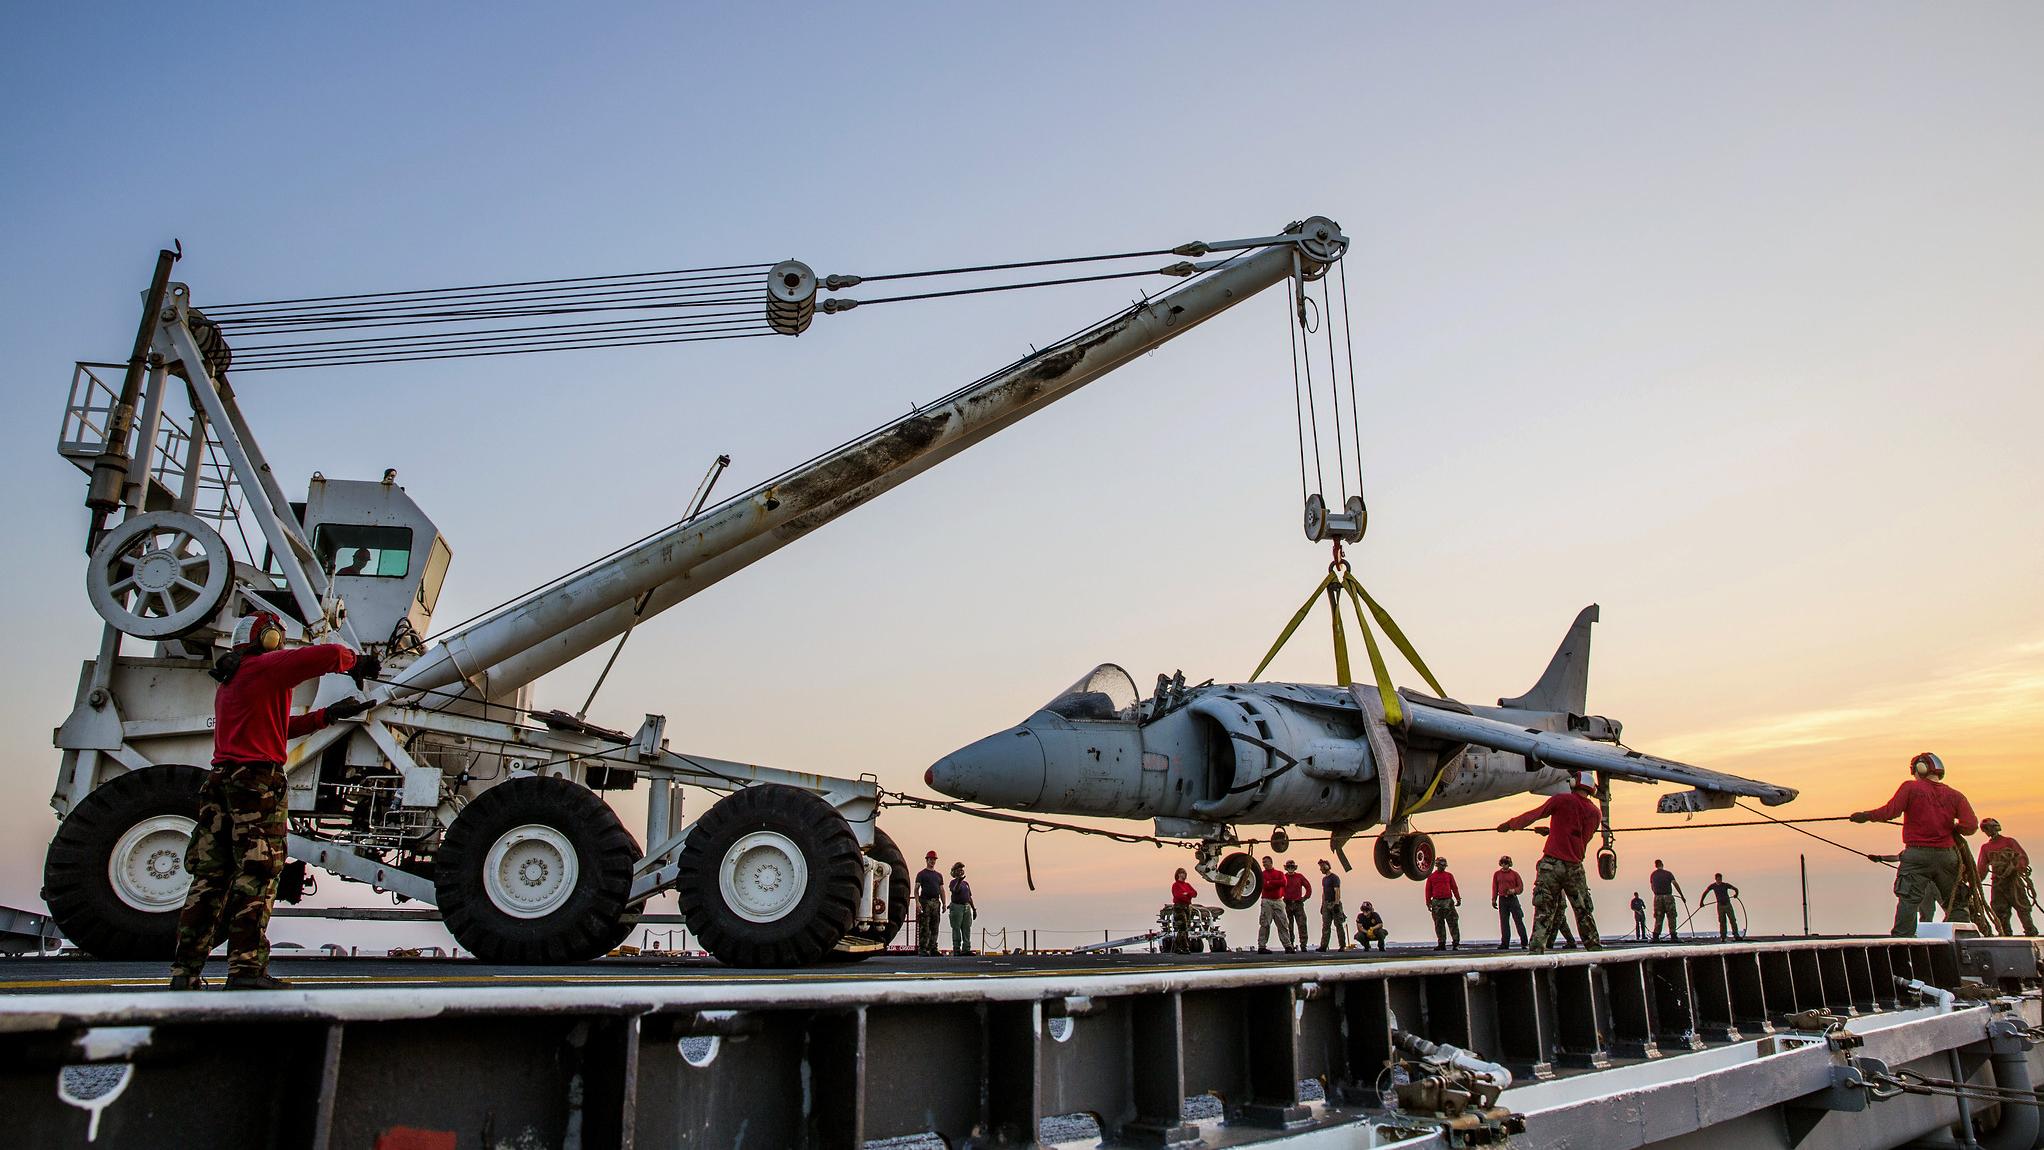 Sailors practice rigging a damaged aircraft with a crash crane 